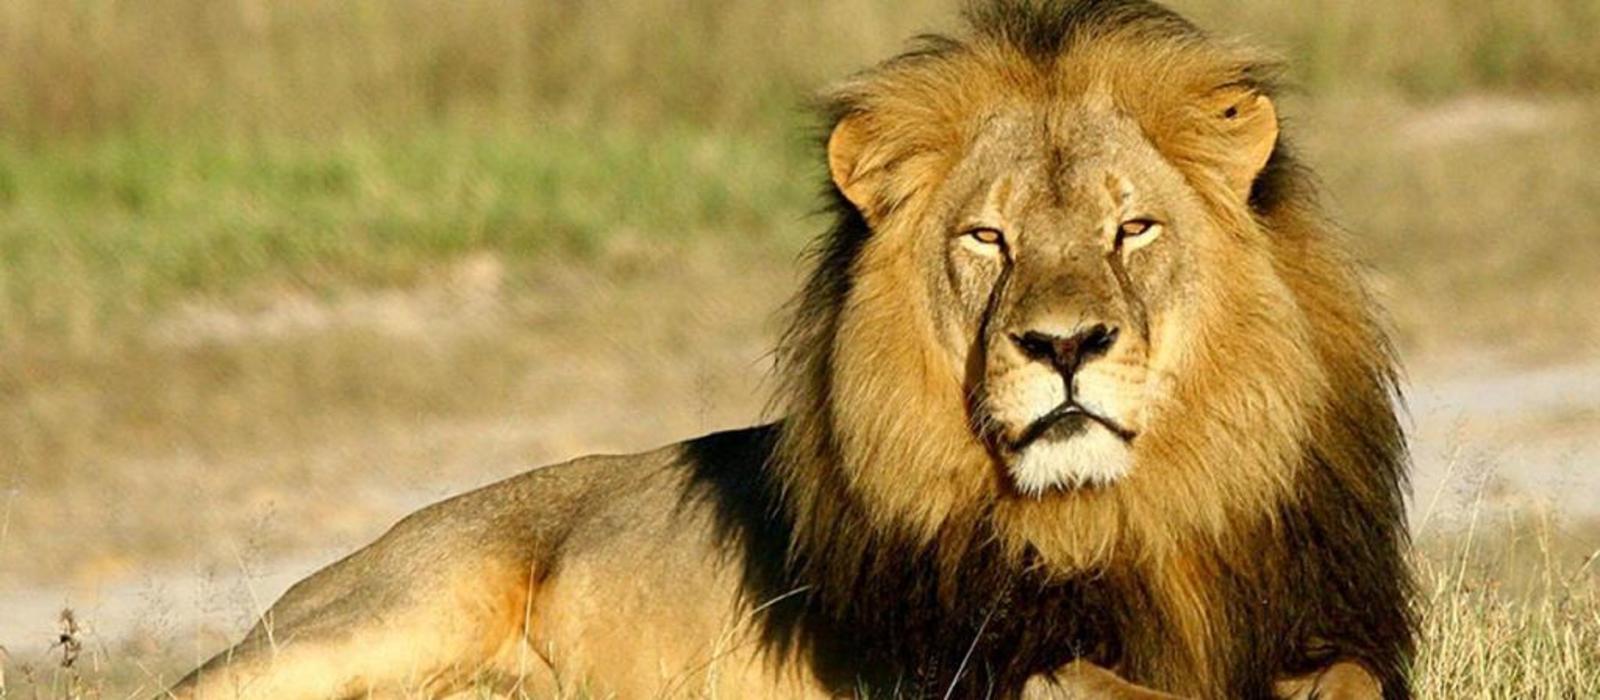 Νότια Αφρική: Φρικτό θάνατο βρήκε ένας 70χρονος – Τον κατασπάραξαν τα λιοντάρια που κρατούσε αιχμάλωτα (φωτο)